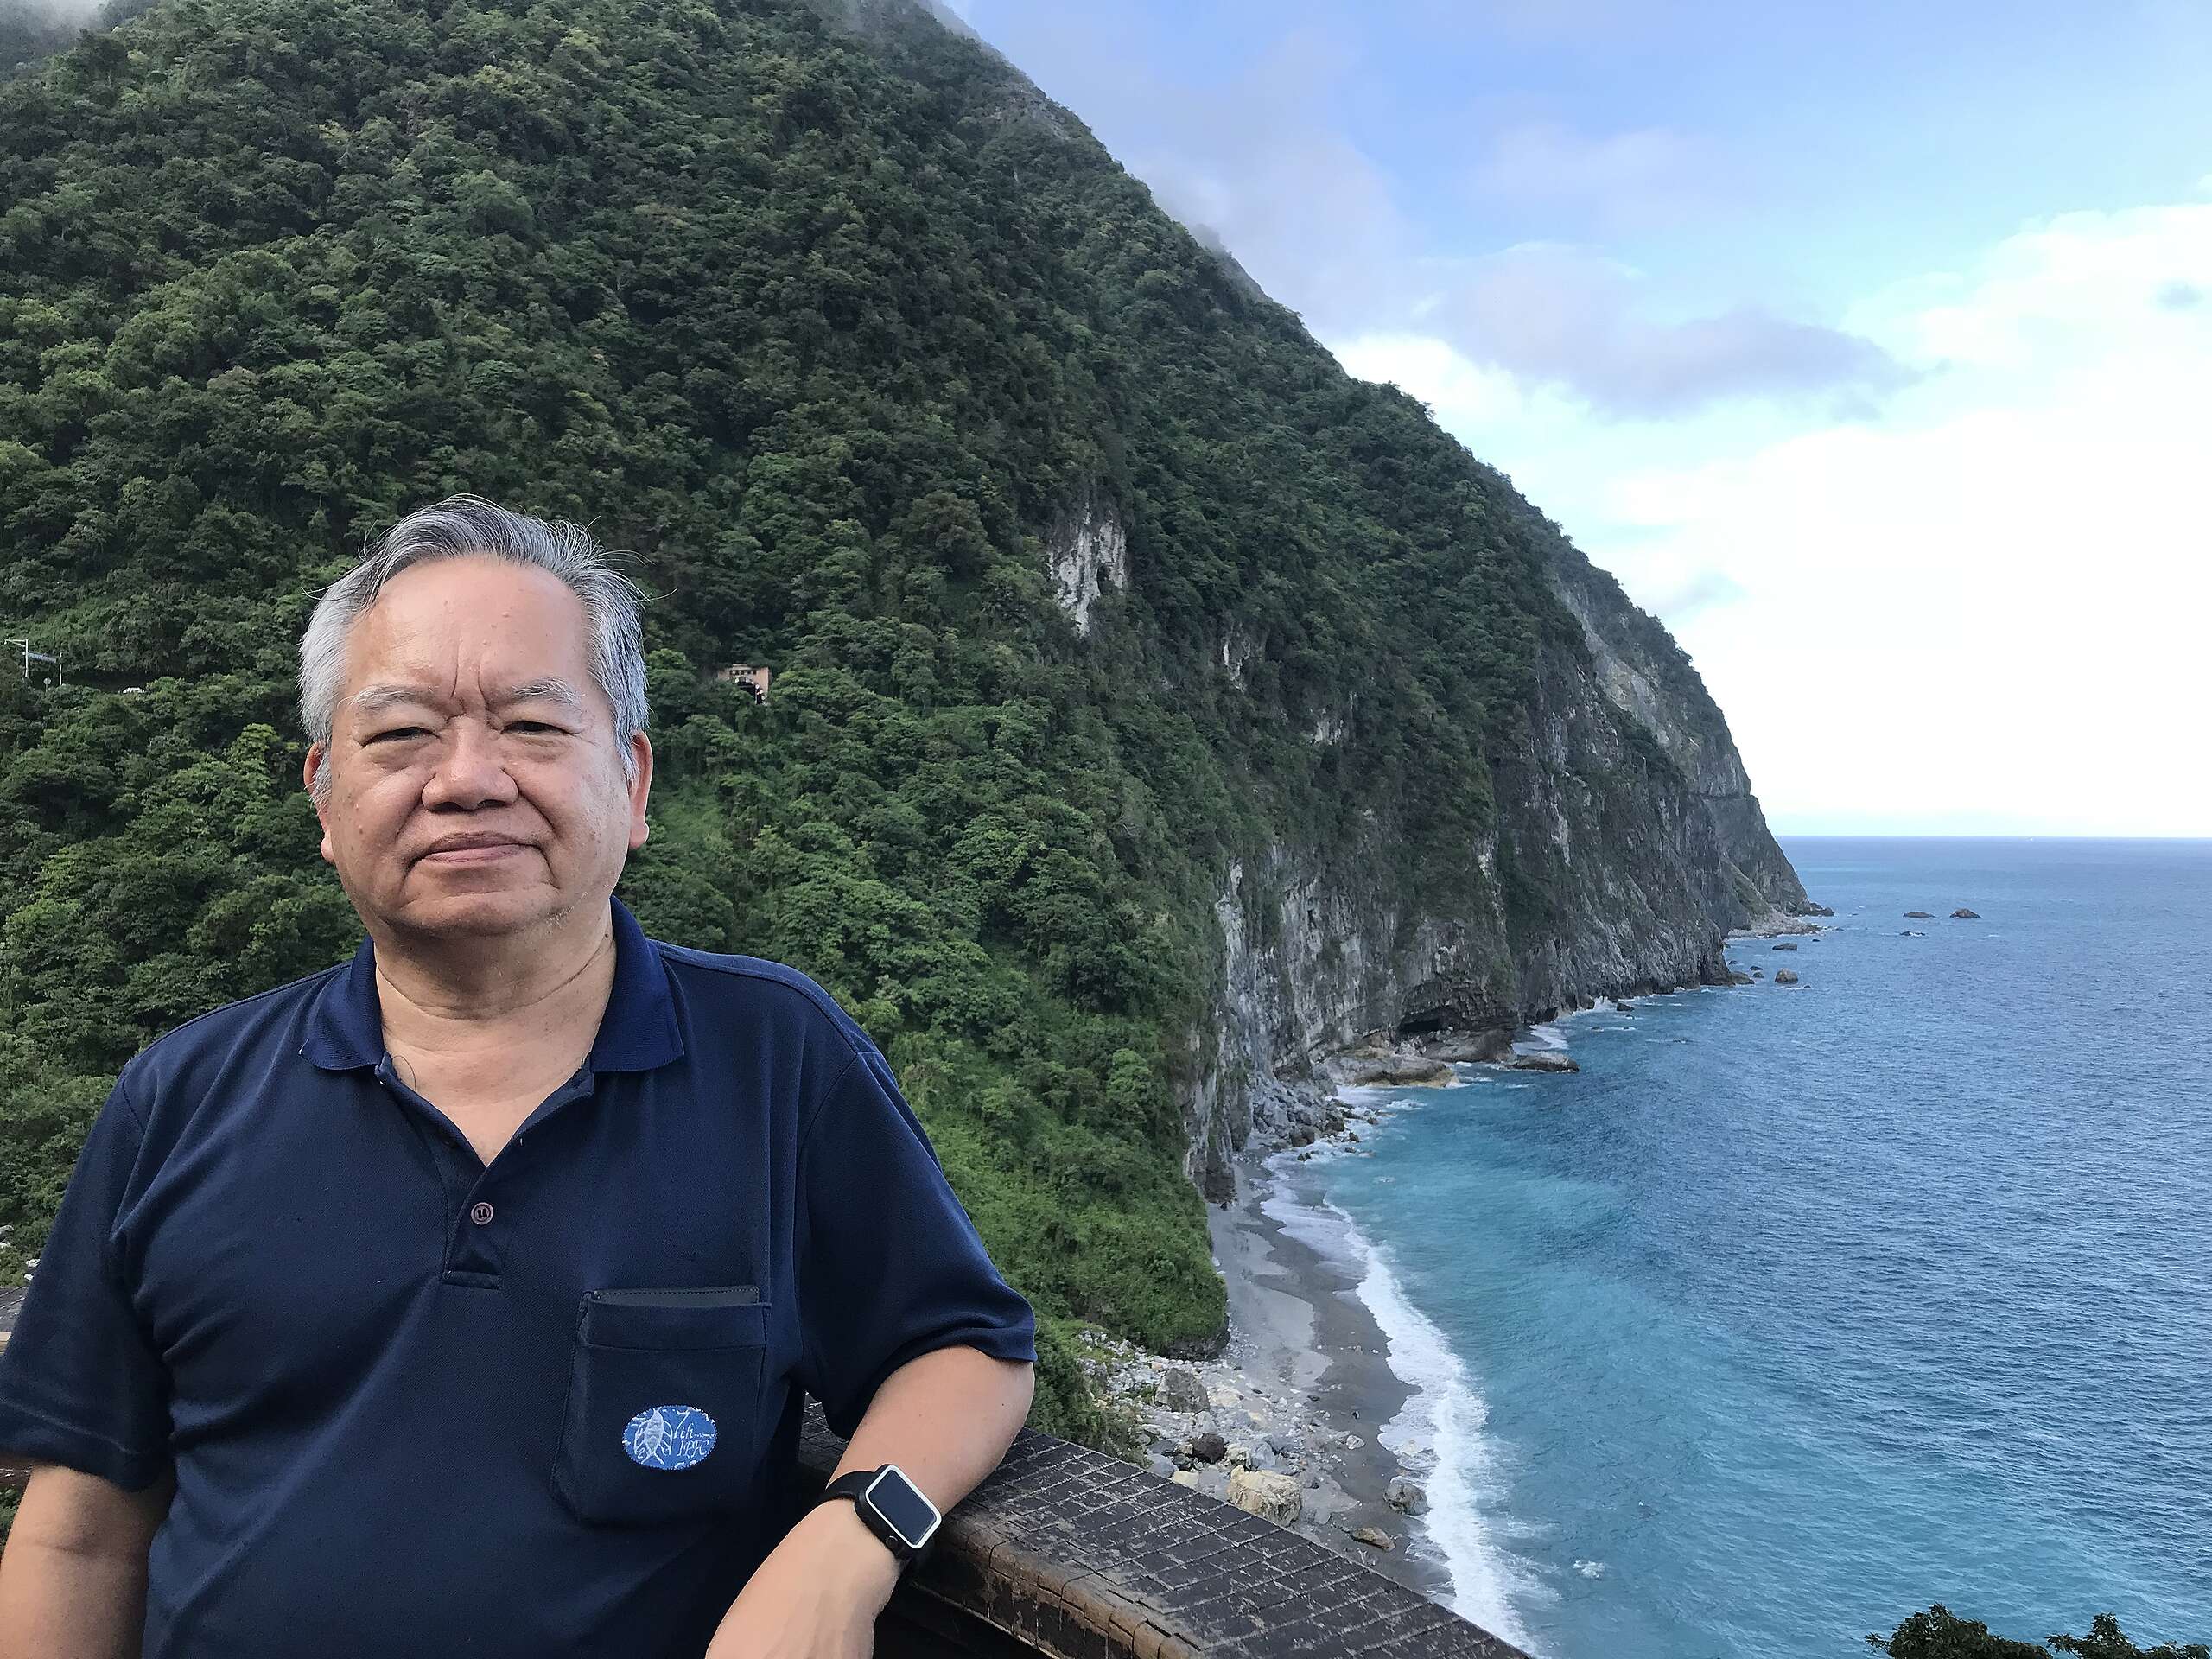 邵廣昭是海內外知名的魚類學家，在海洋保育的領域耕耘超過 40 年，他多年研究數據證明臺灣海洋生物多樣性嚴重流失，亟需落實保護措施。2021 年起邵廣昭與綠色和平合作，期待合力守護臺灣海洋生態。